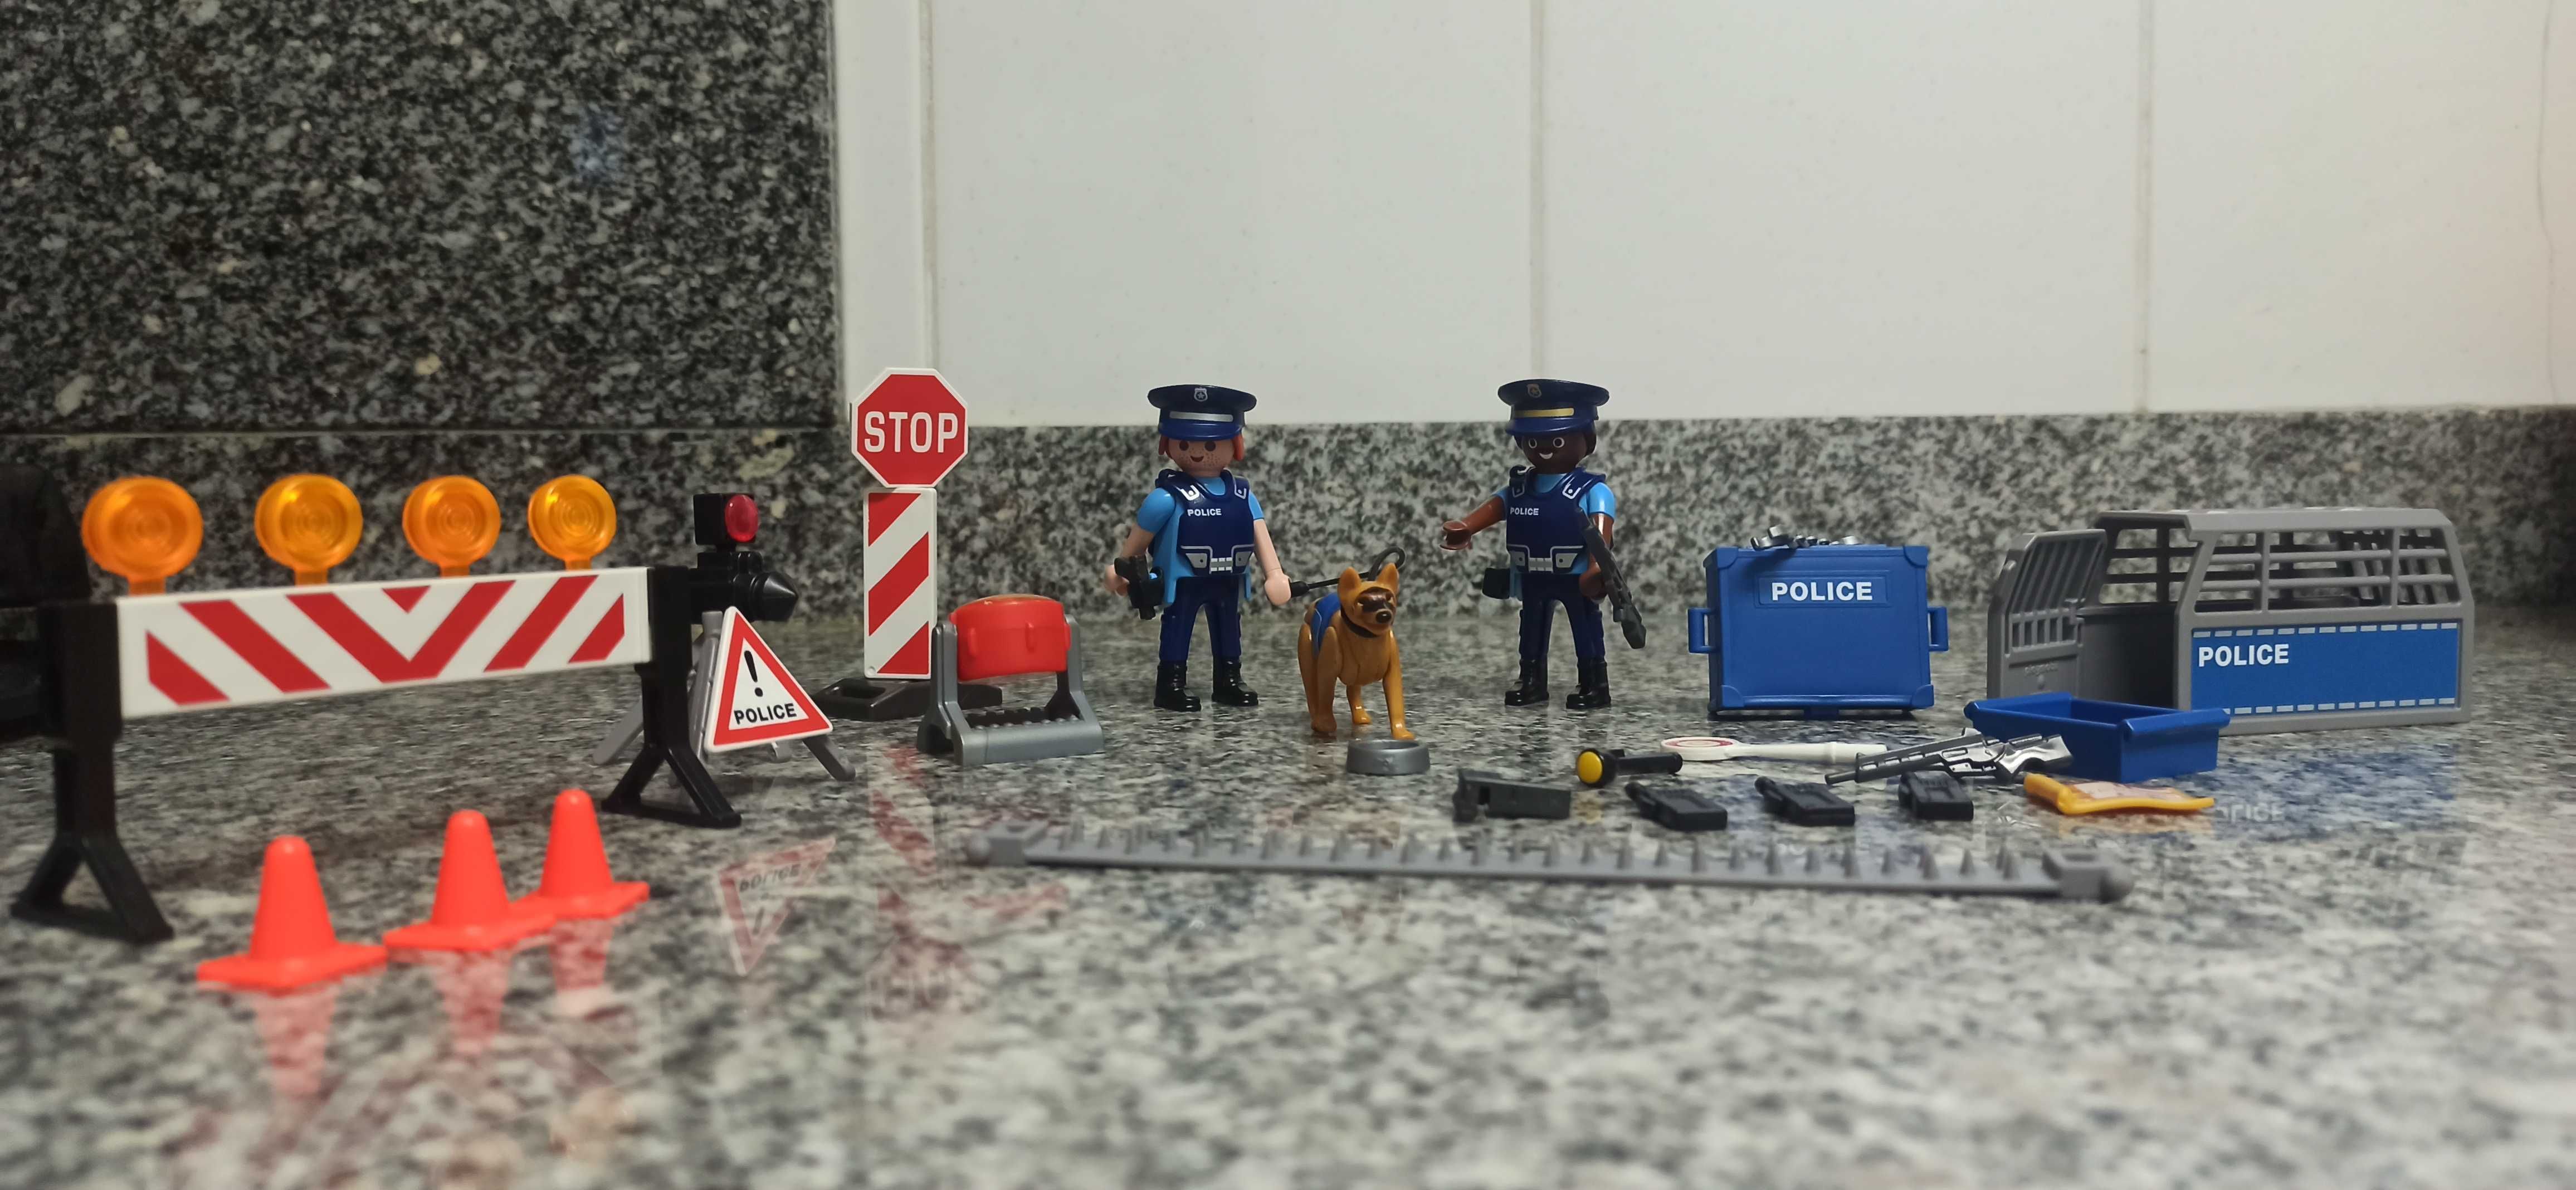 Playmobil polícia de trânsito